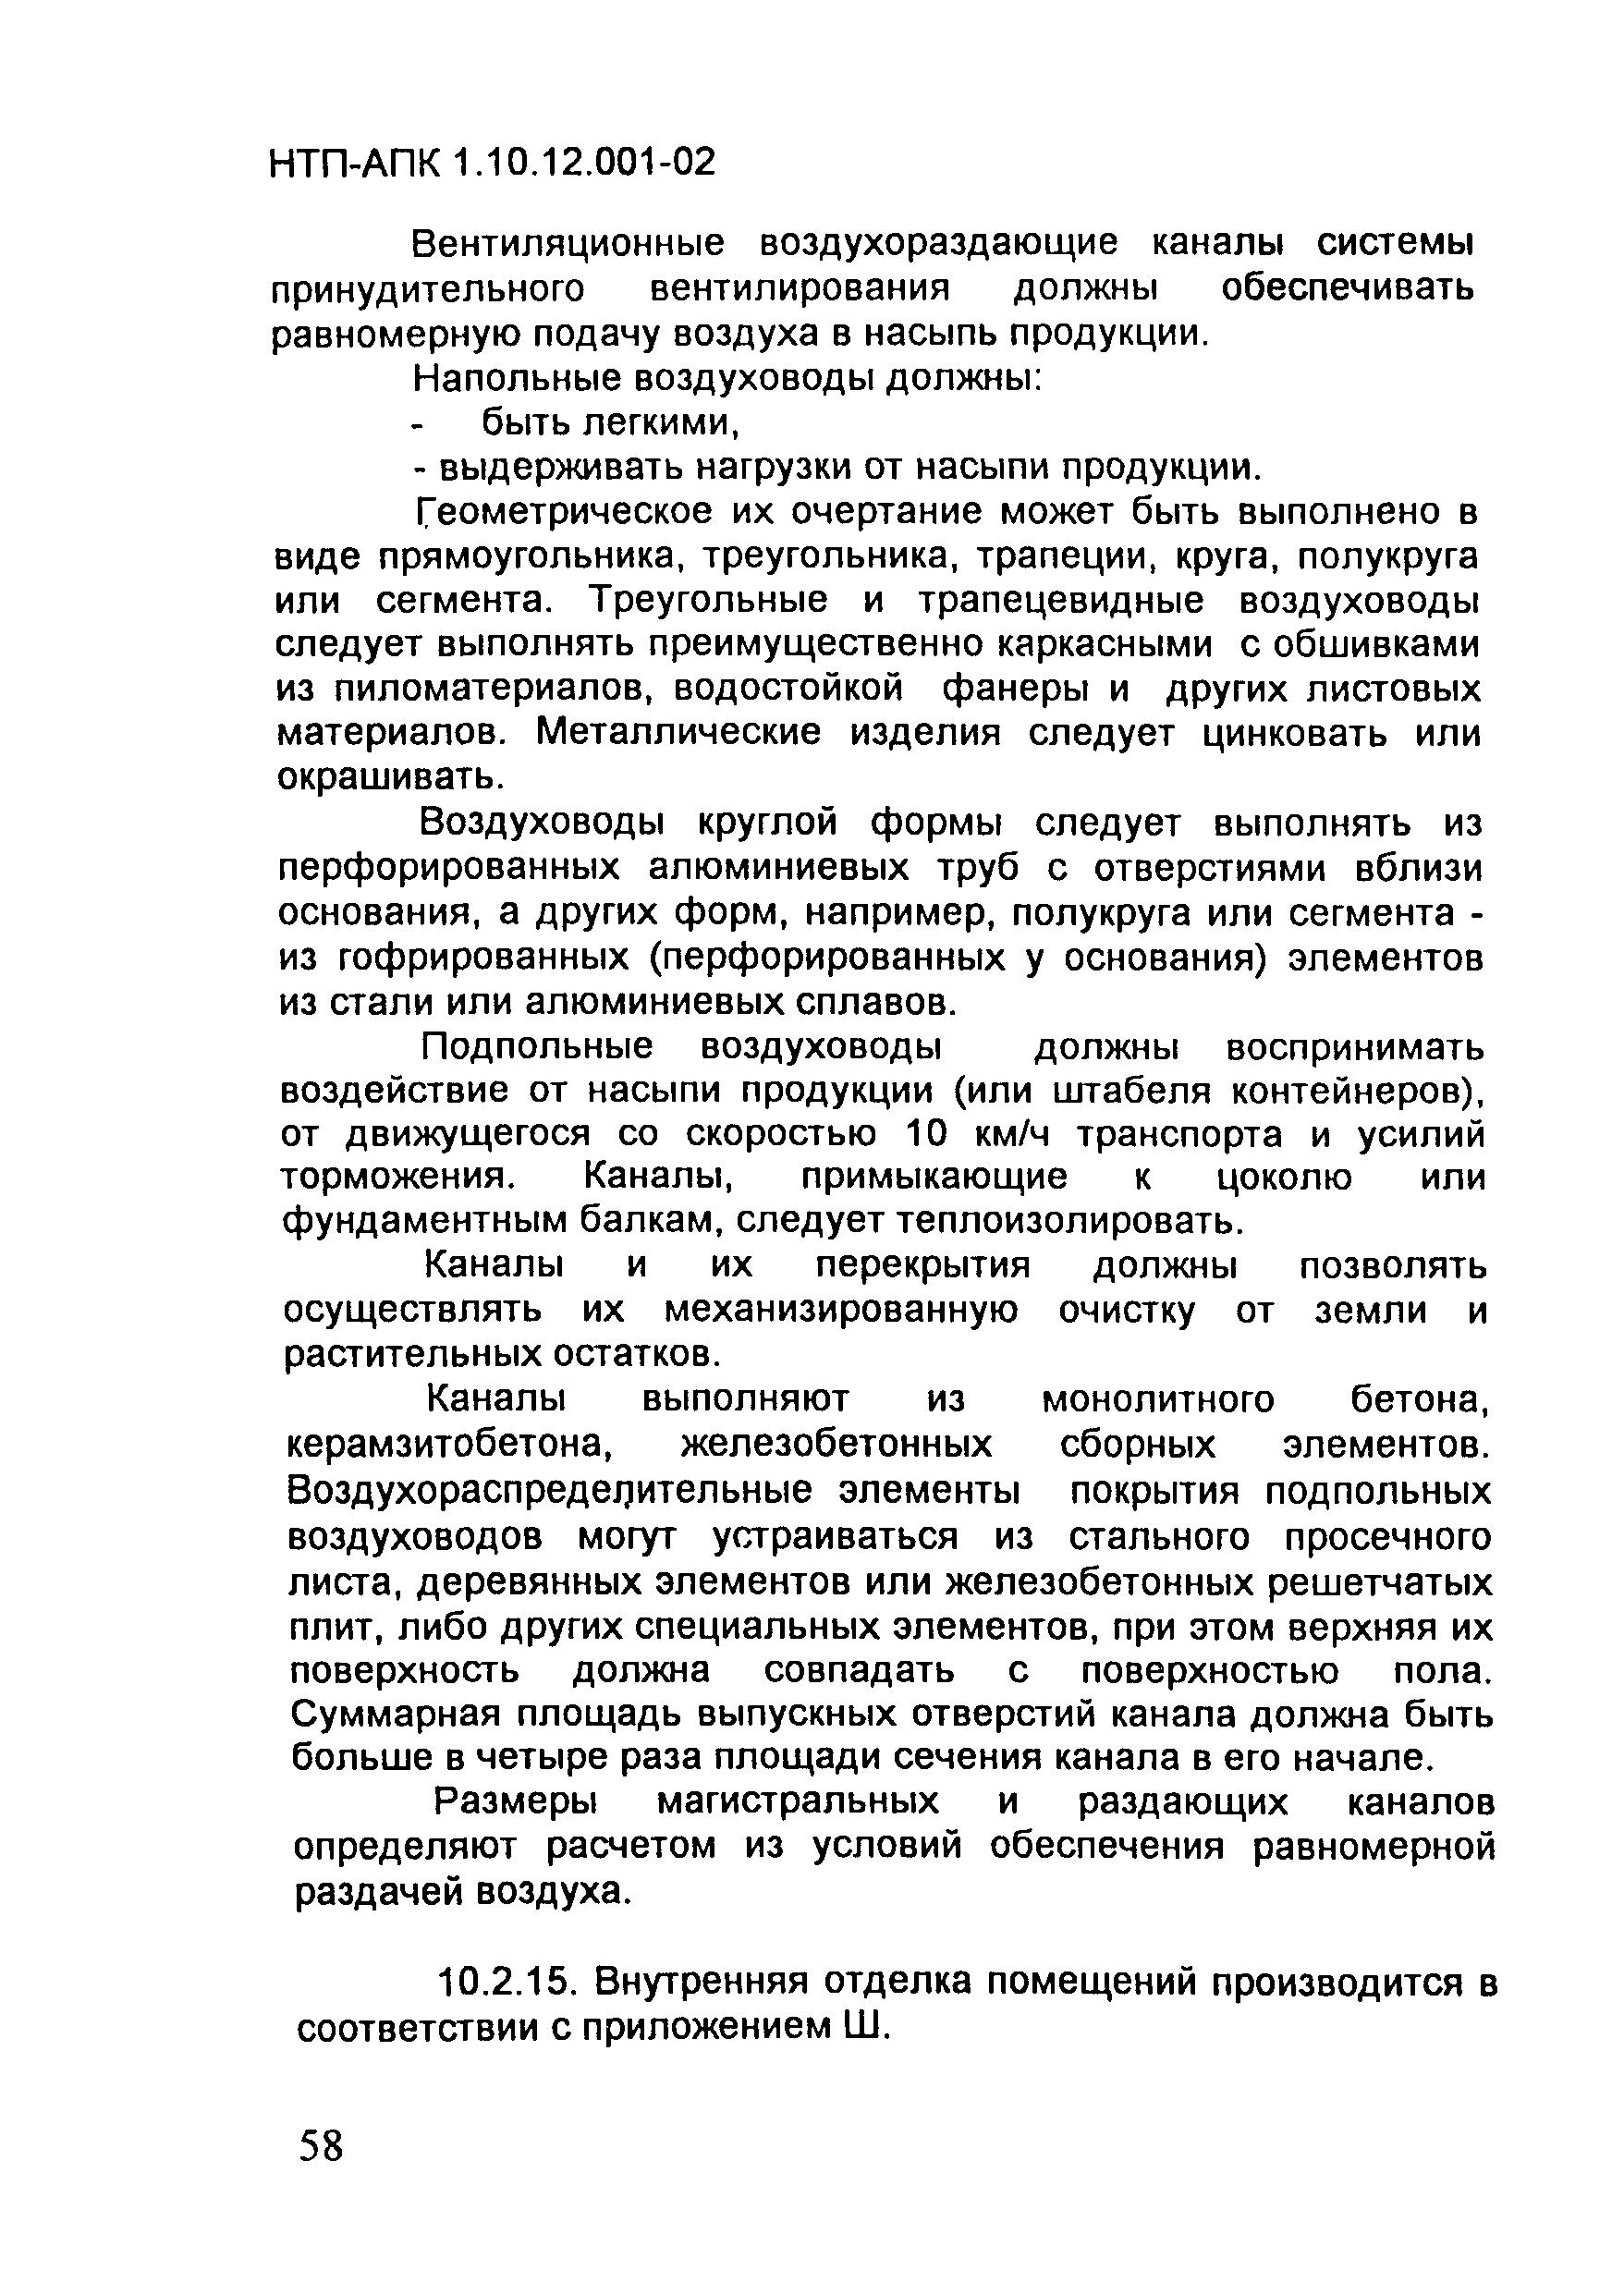 НТП АПК 1.10.12.001-02